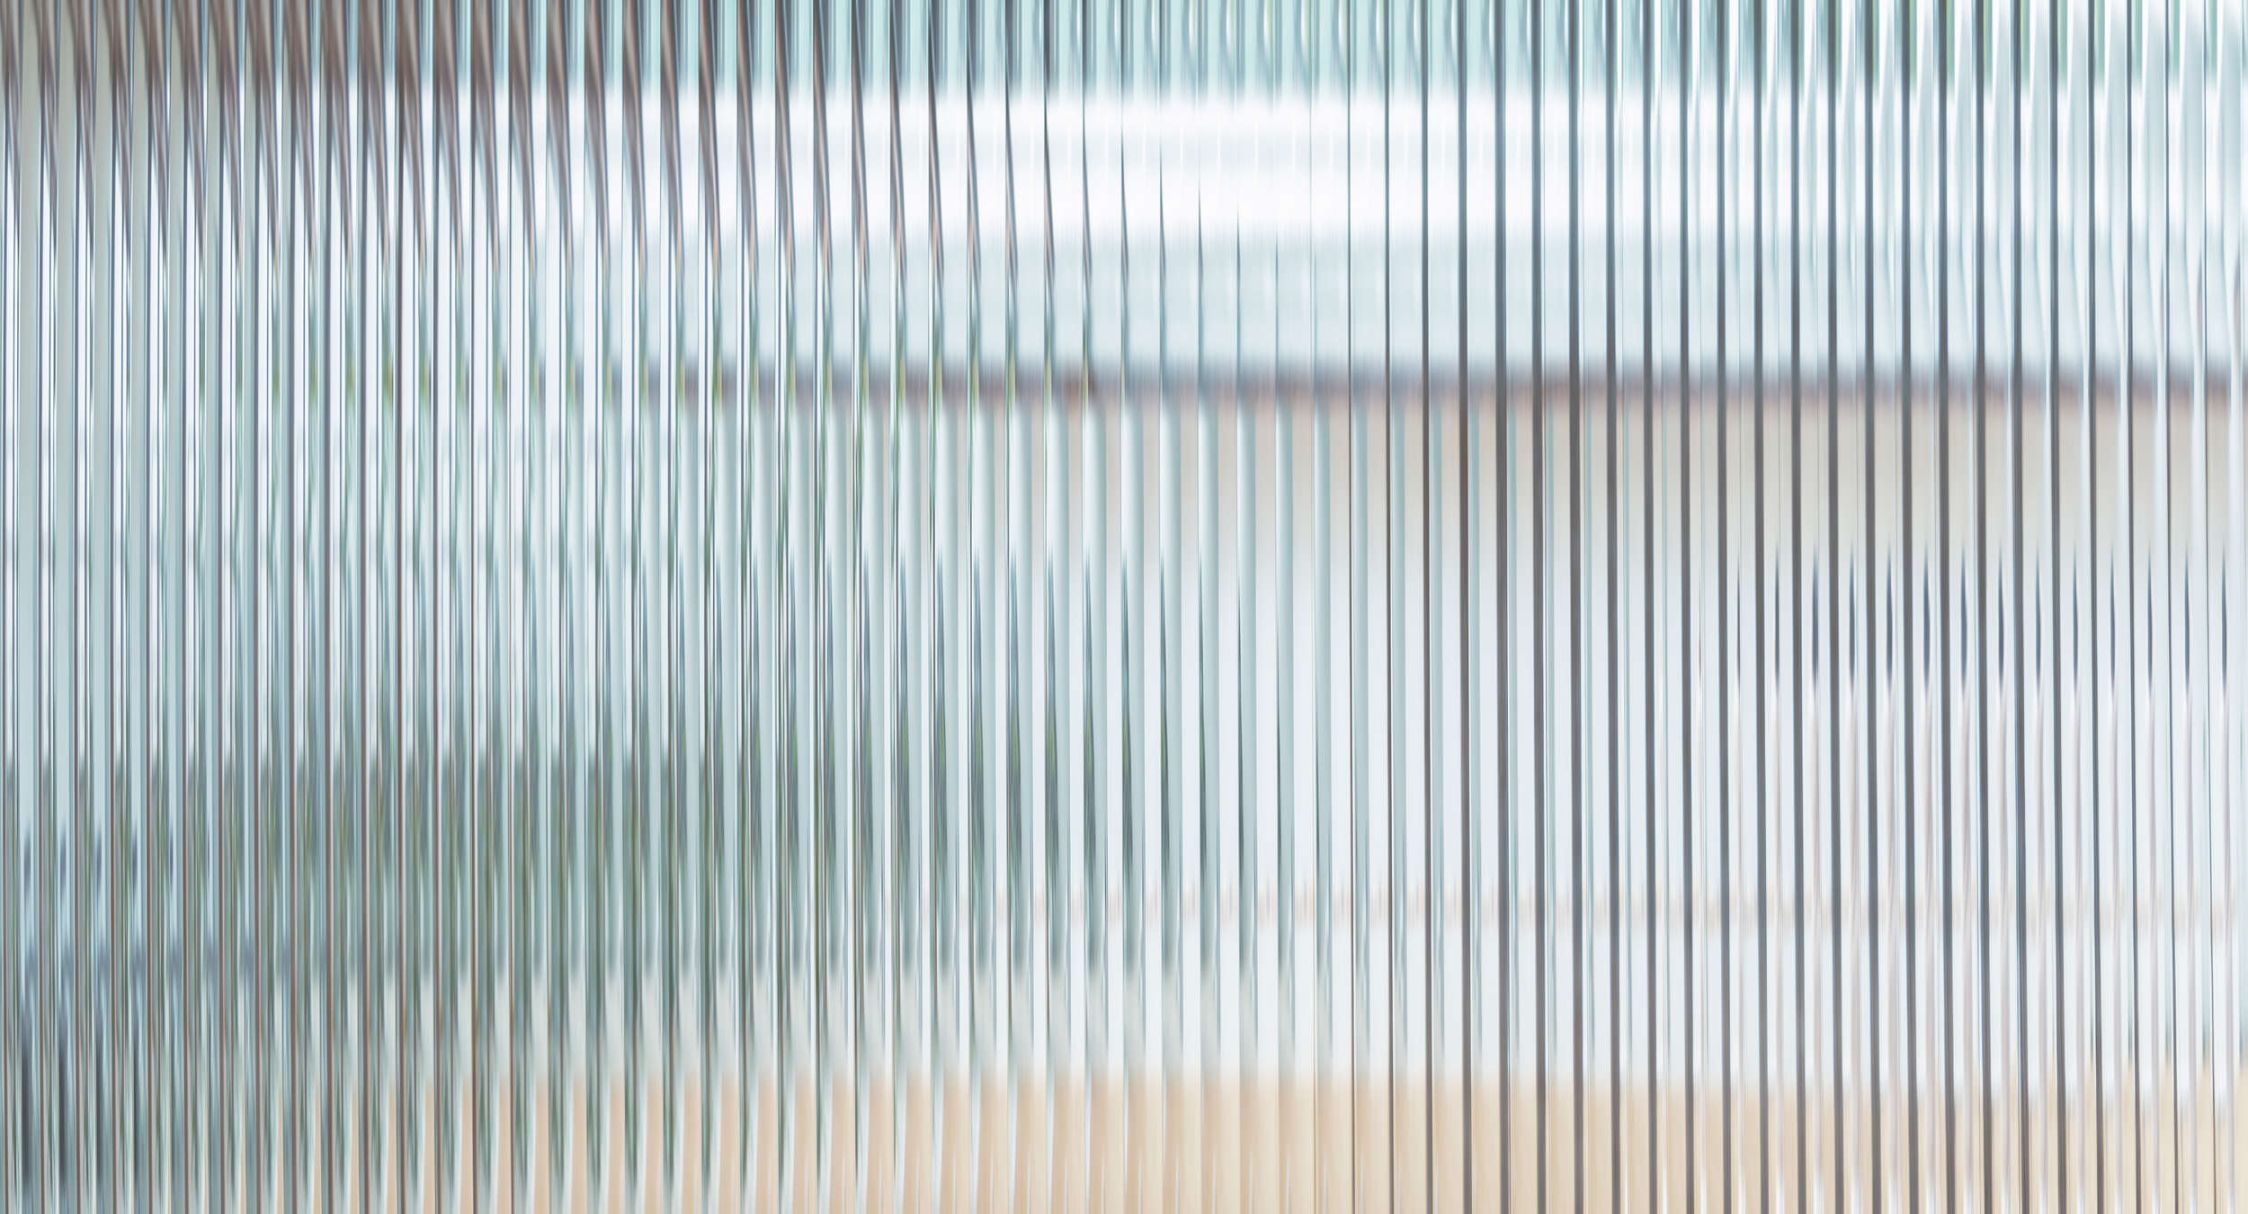             Fototapete »blur« mit futuristischem Design und verschwommenem Hintergrund – Glattes, leicht perlmutt-schimmerndes Vlies
        